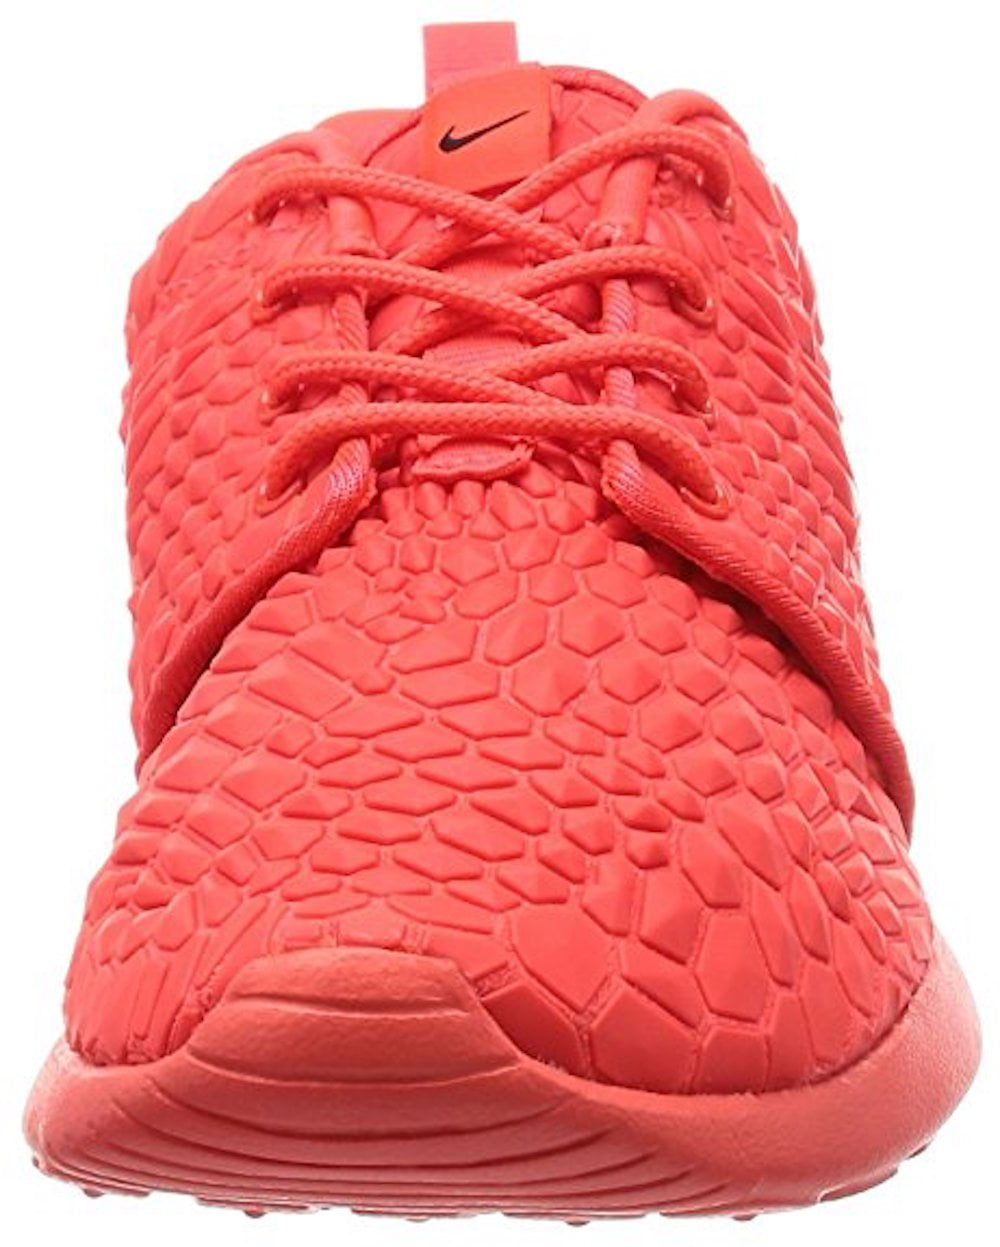 Nike Roshe One DMB Unisex/Adult shoe size 11.5 Casual 807460-600 Bright  Crimson